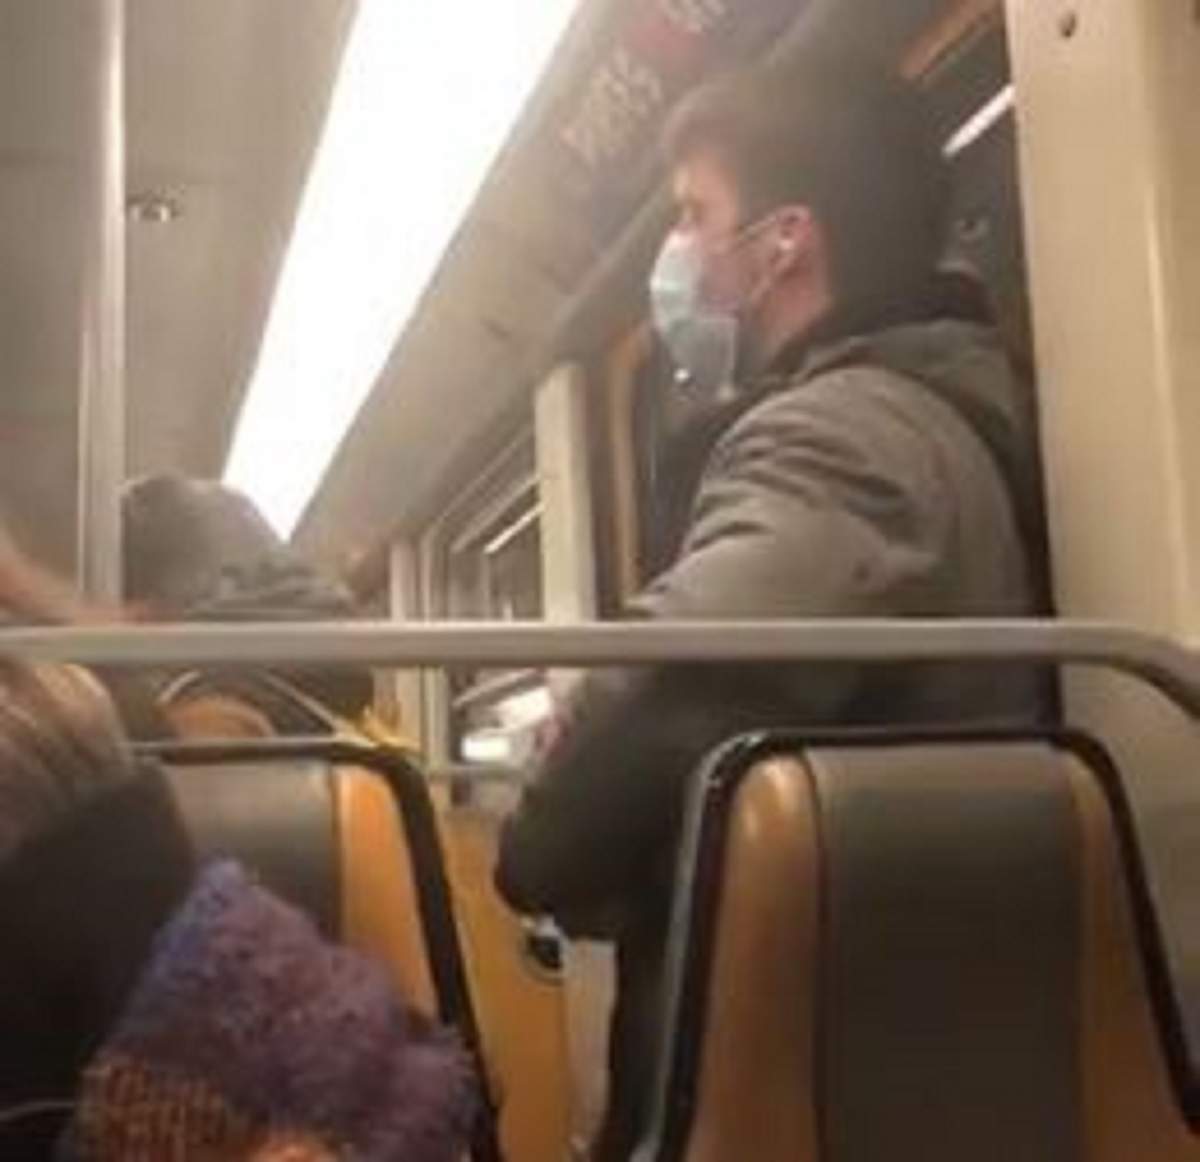 Gest șocant în metrou! Un tânăr și-a lins degetele, apoi le-a șters pe bara de susținere. Băiatul a fost arestat